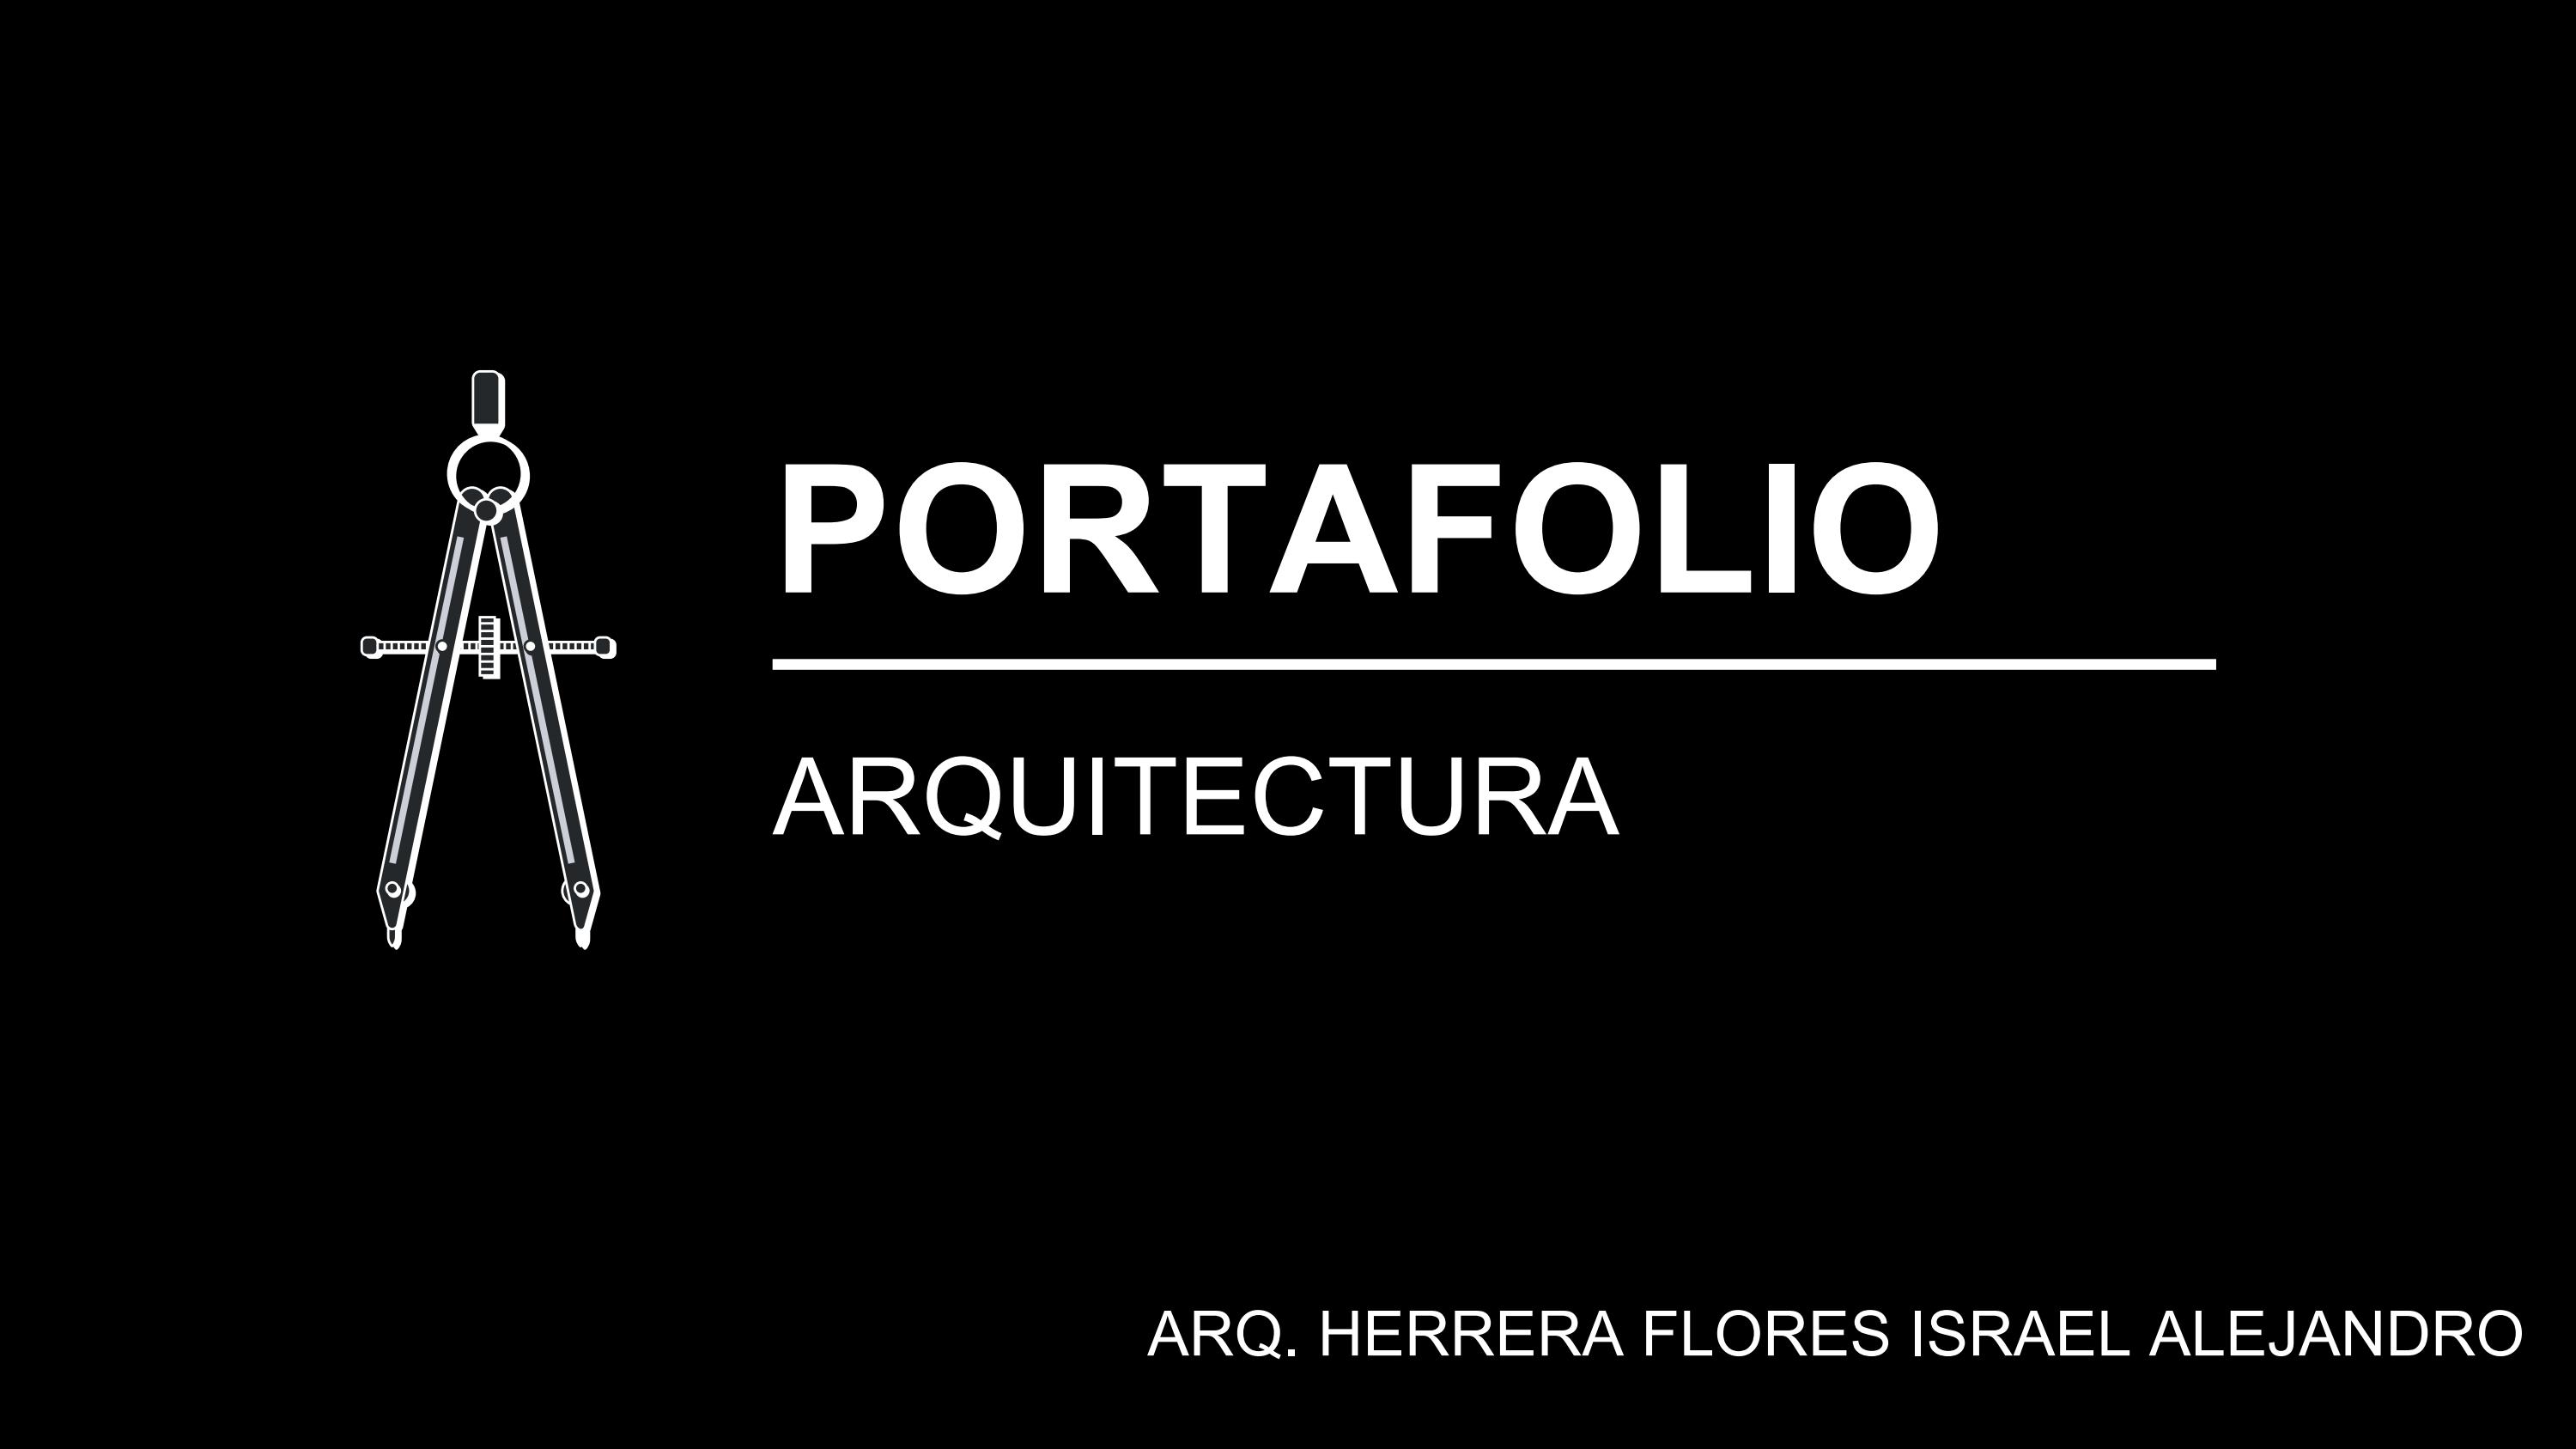 PORTAFOLIO

ARQUITECTURA

 

ARQ. HERRERA FLORES ISRAEL ALEJANDRO